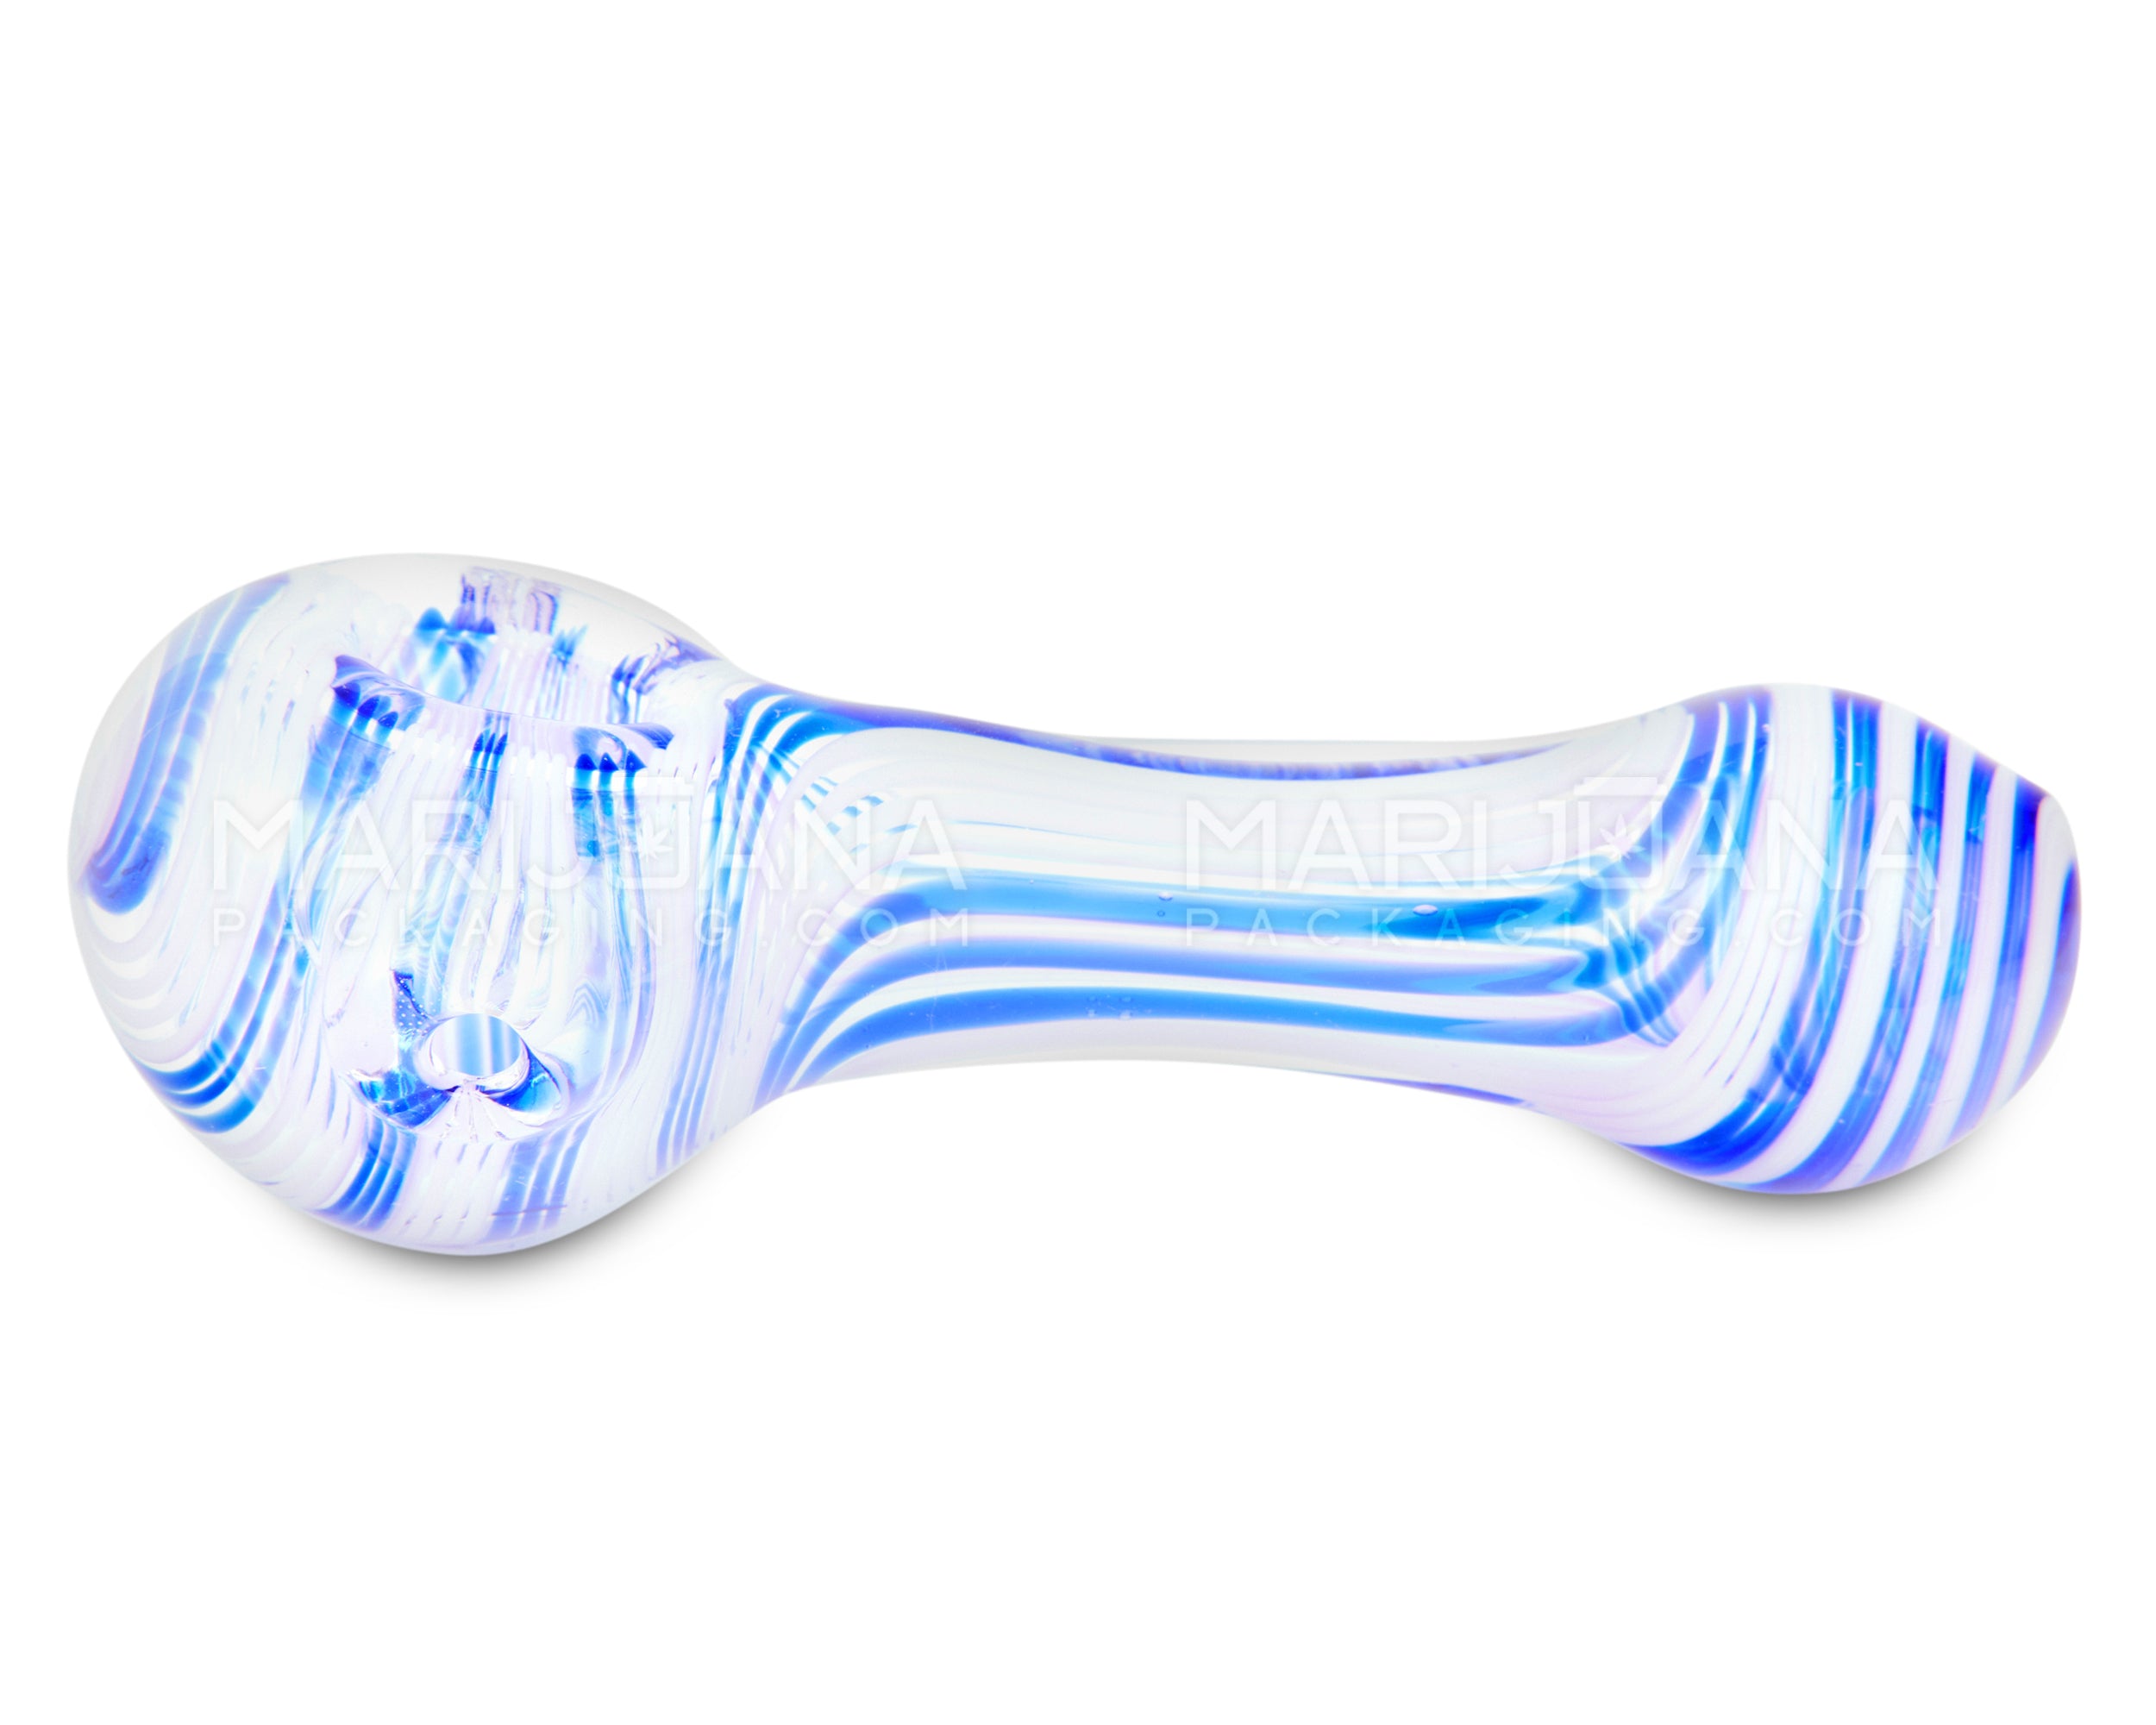 Swirl Spoon Hand Pipe w/ Triple Knockers | 5in Long - Glass - Assorted - 5